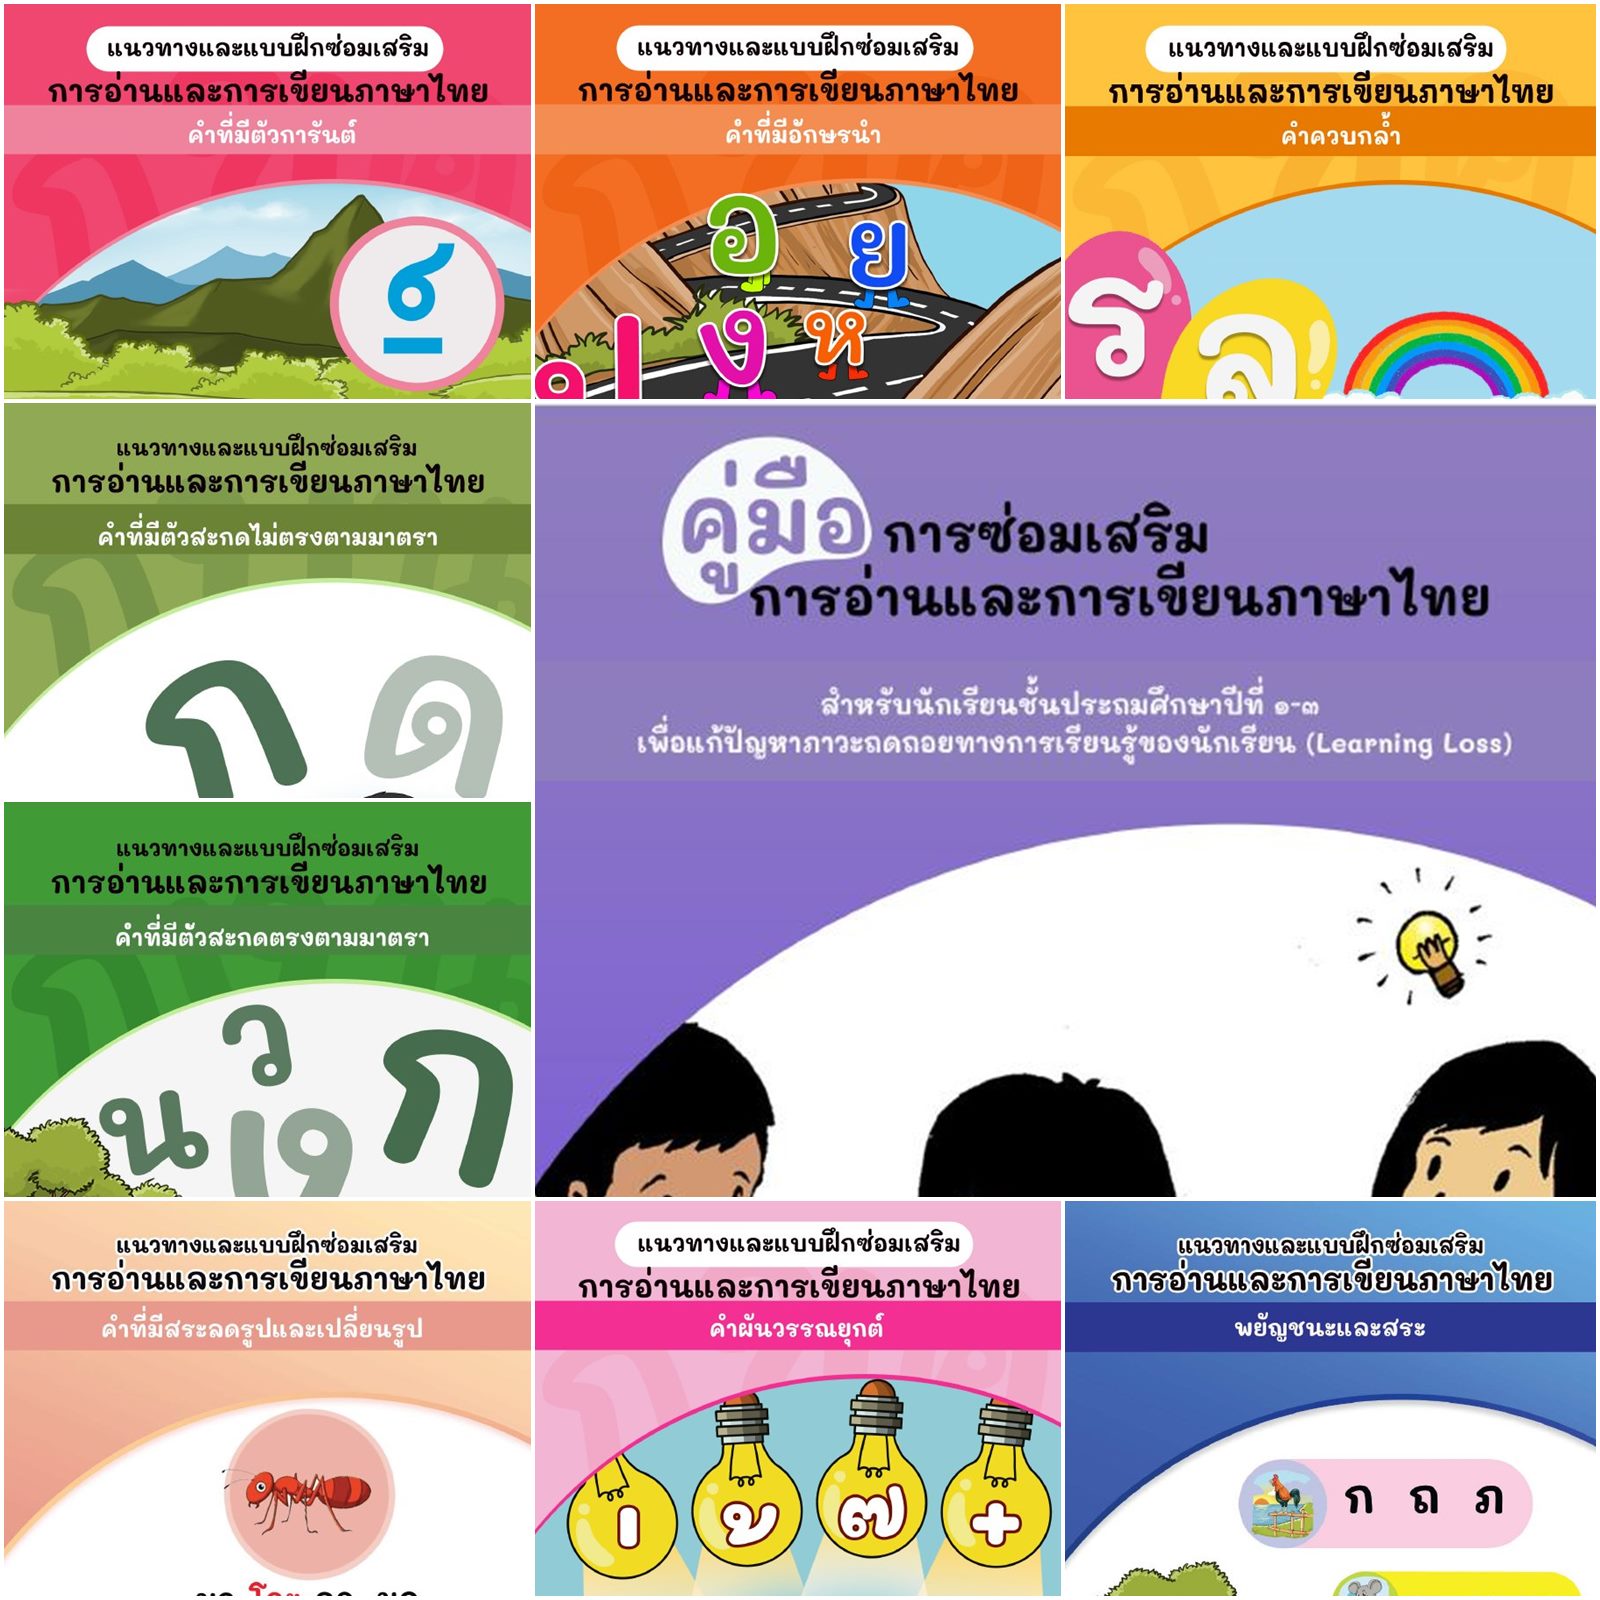 ดาวน์โหลดฟรี คู่มือการซ่อมเสริมการอ่านและการเขียนภาษาไทย สำหรับนักเรียน ป.1  - 3 เพื่อแก้ปัญหาภาวะถดถอยทางการเรียนรู้ของนักเรียน (Learning Loss) -  รักครู.Com